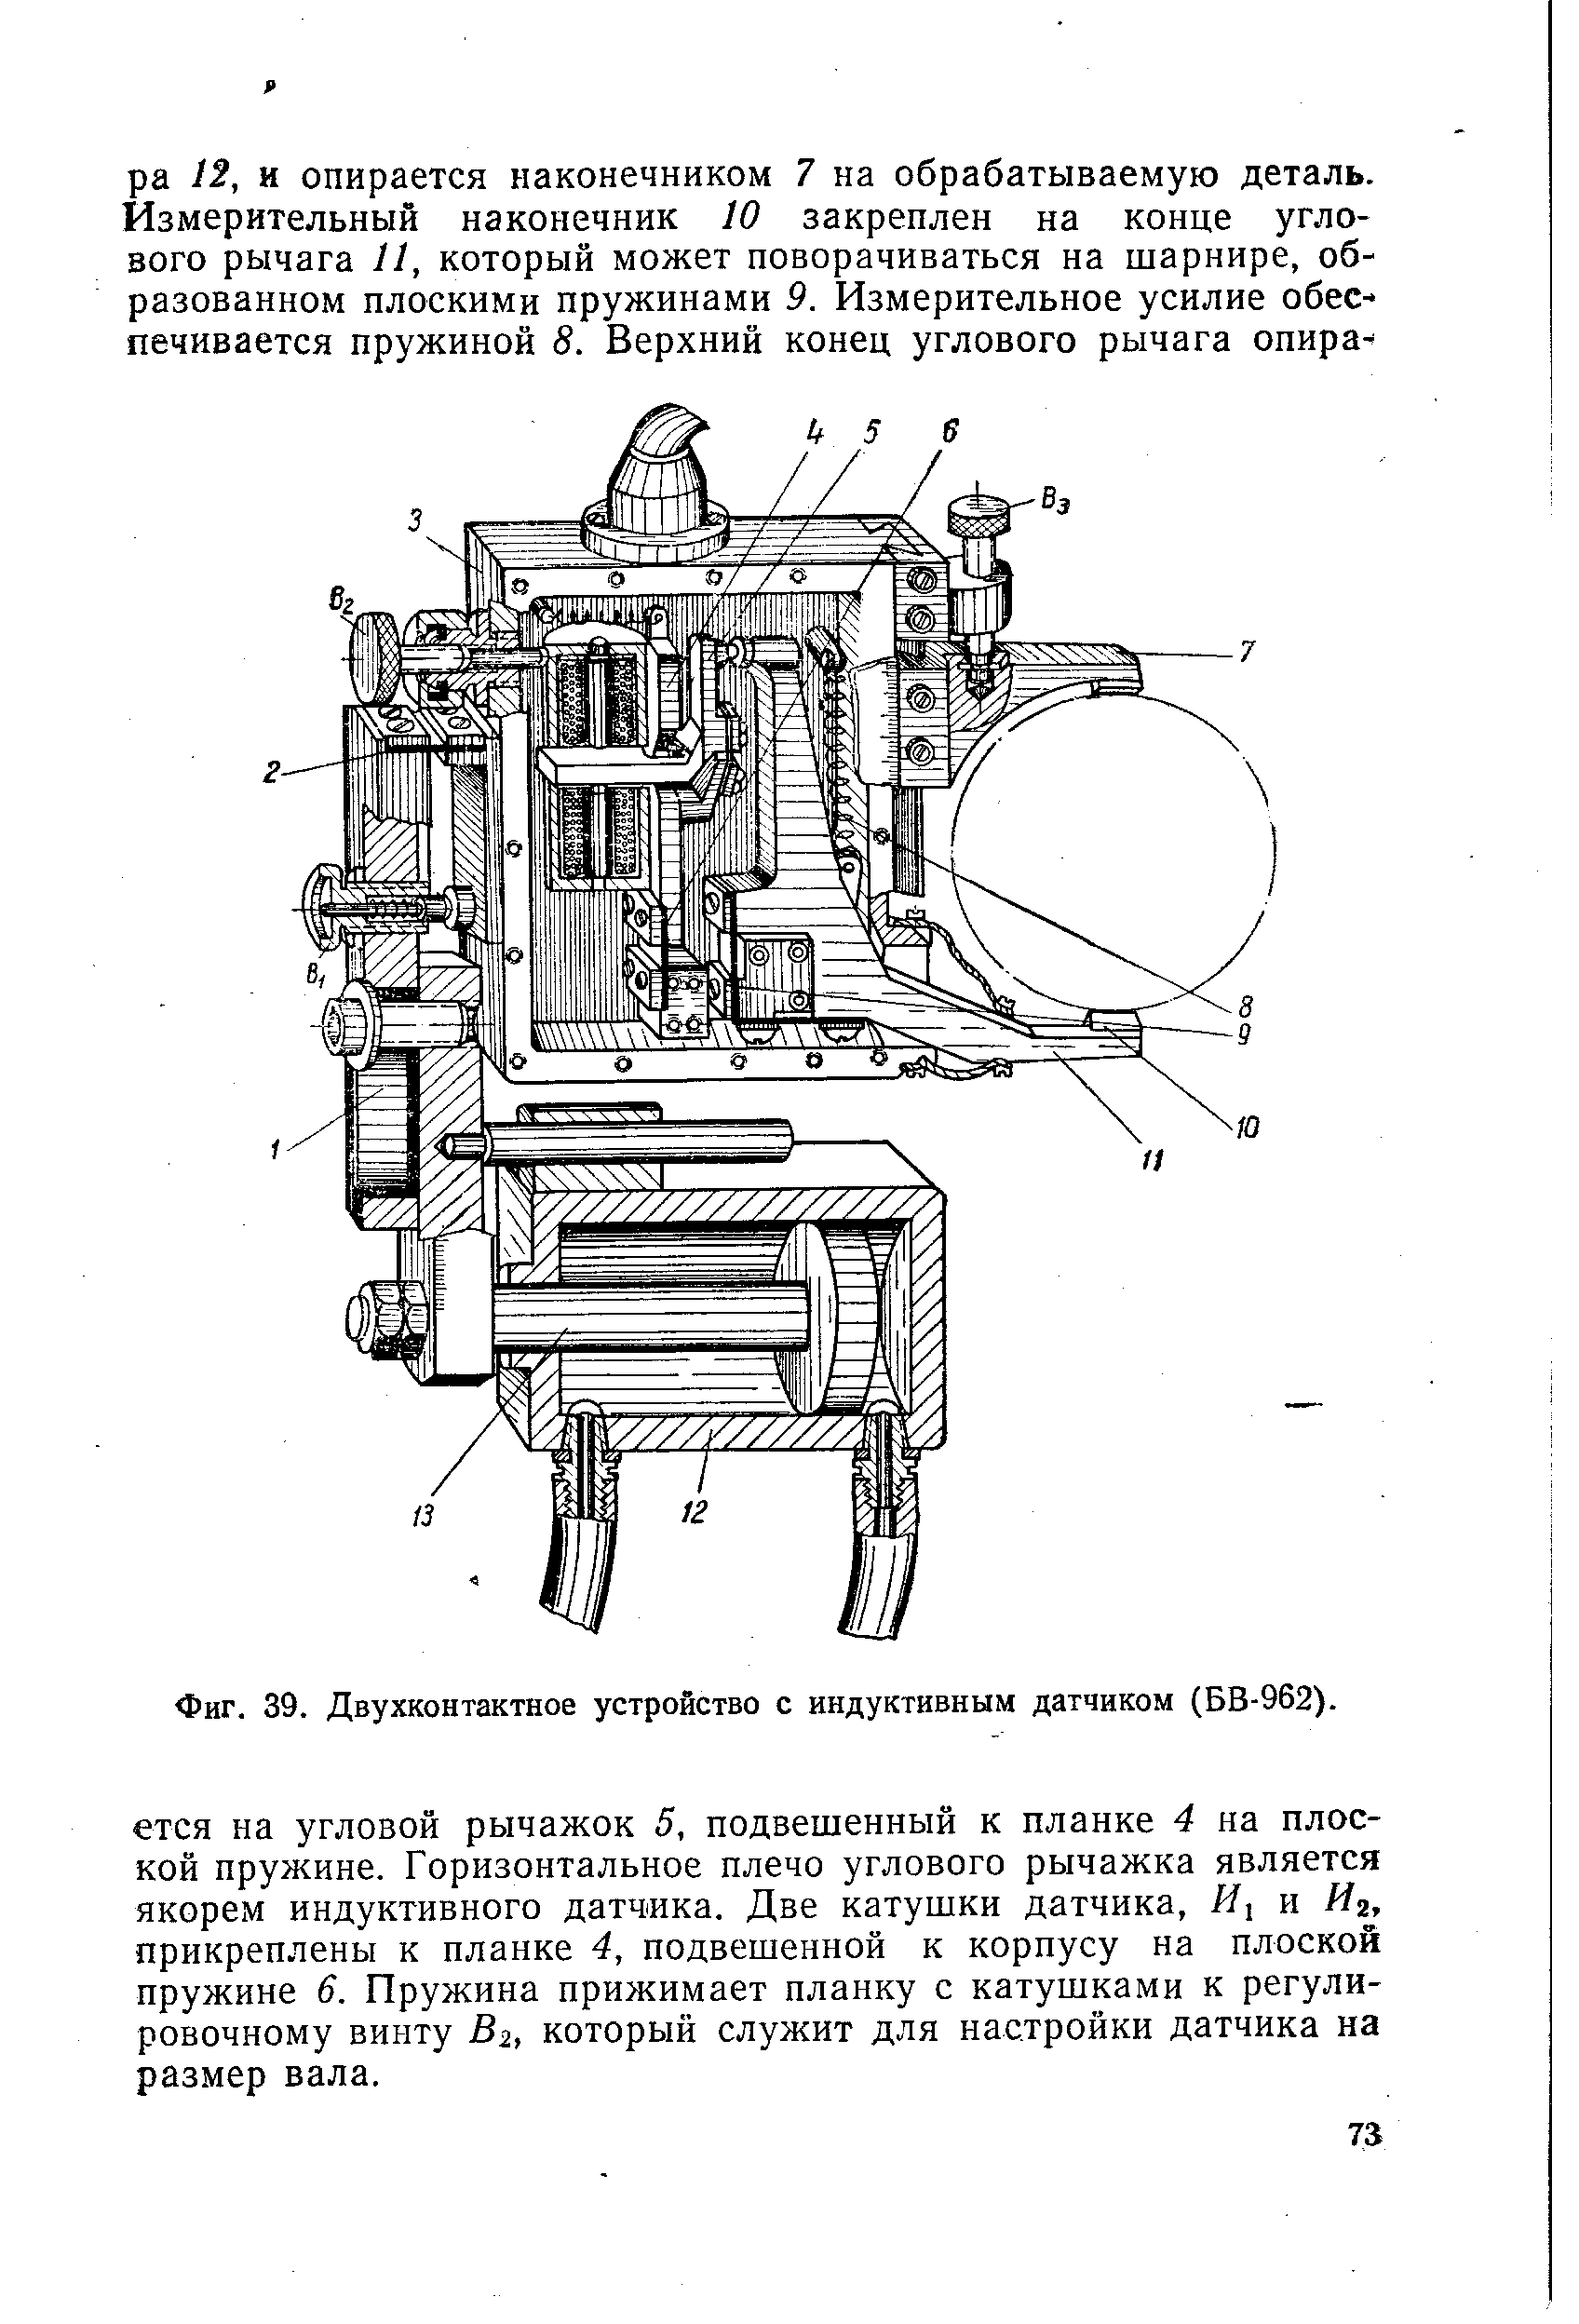 Фиг. 39. Двухконтактное устройство с индуктивным датчиком (БВ-962).
